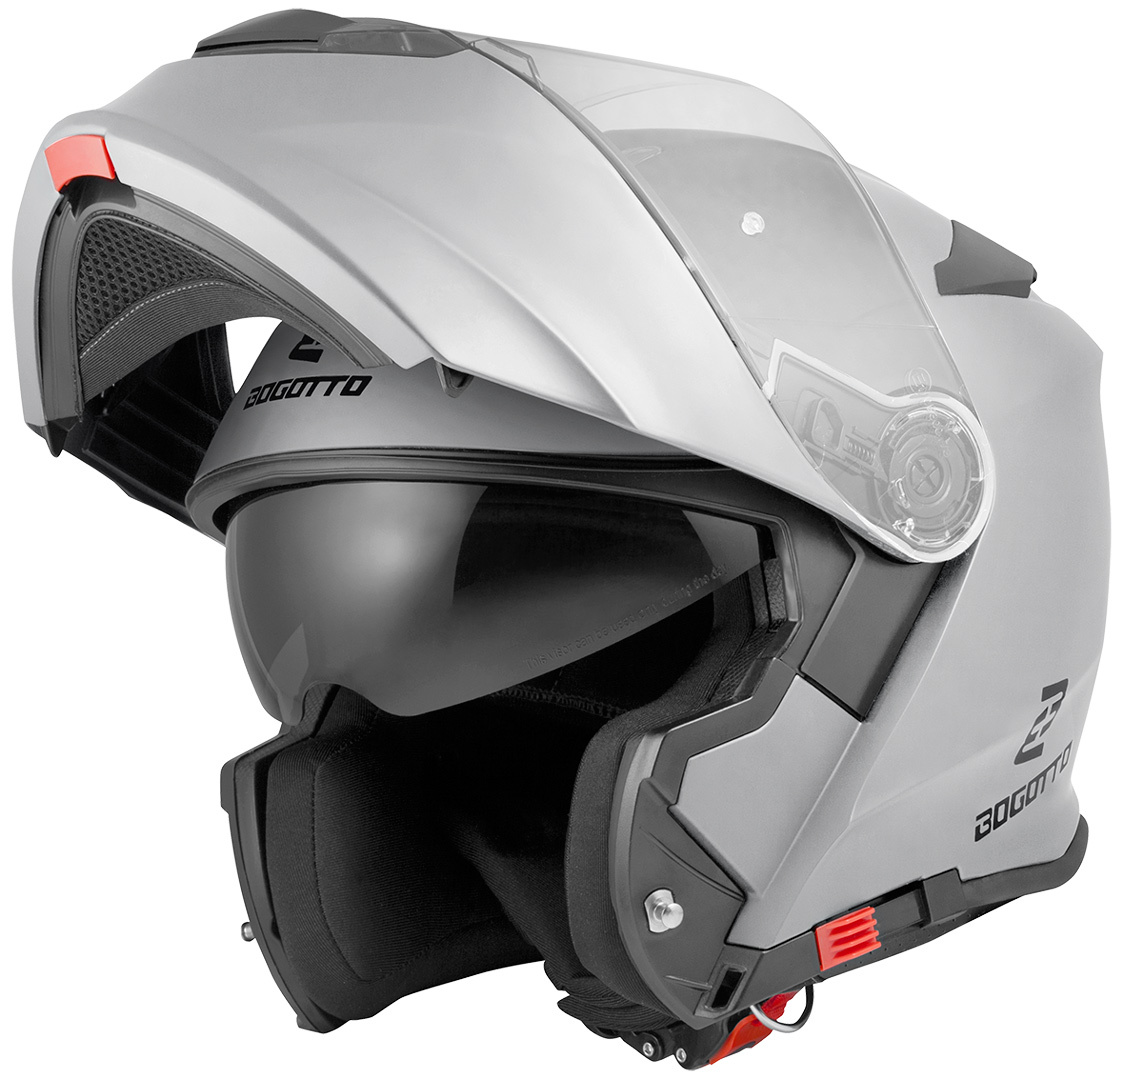 Мотоциклетный шлем Bogotto V271 с логотипом, серебристый мотоциклетный шлем шлем с подсолнухом